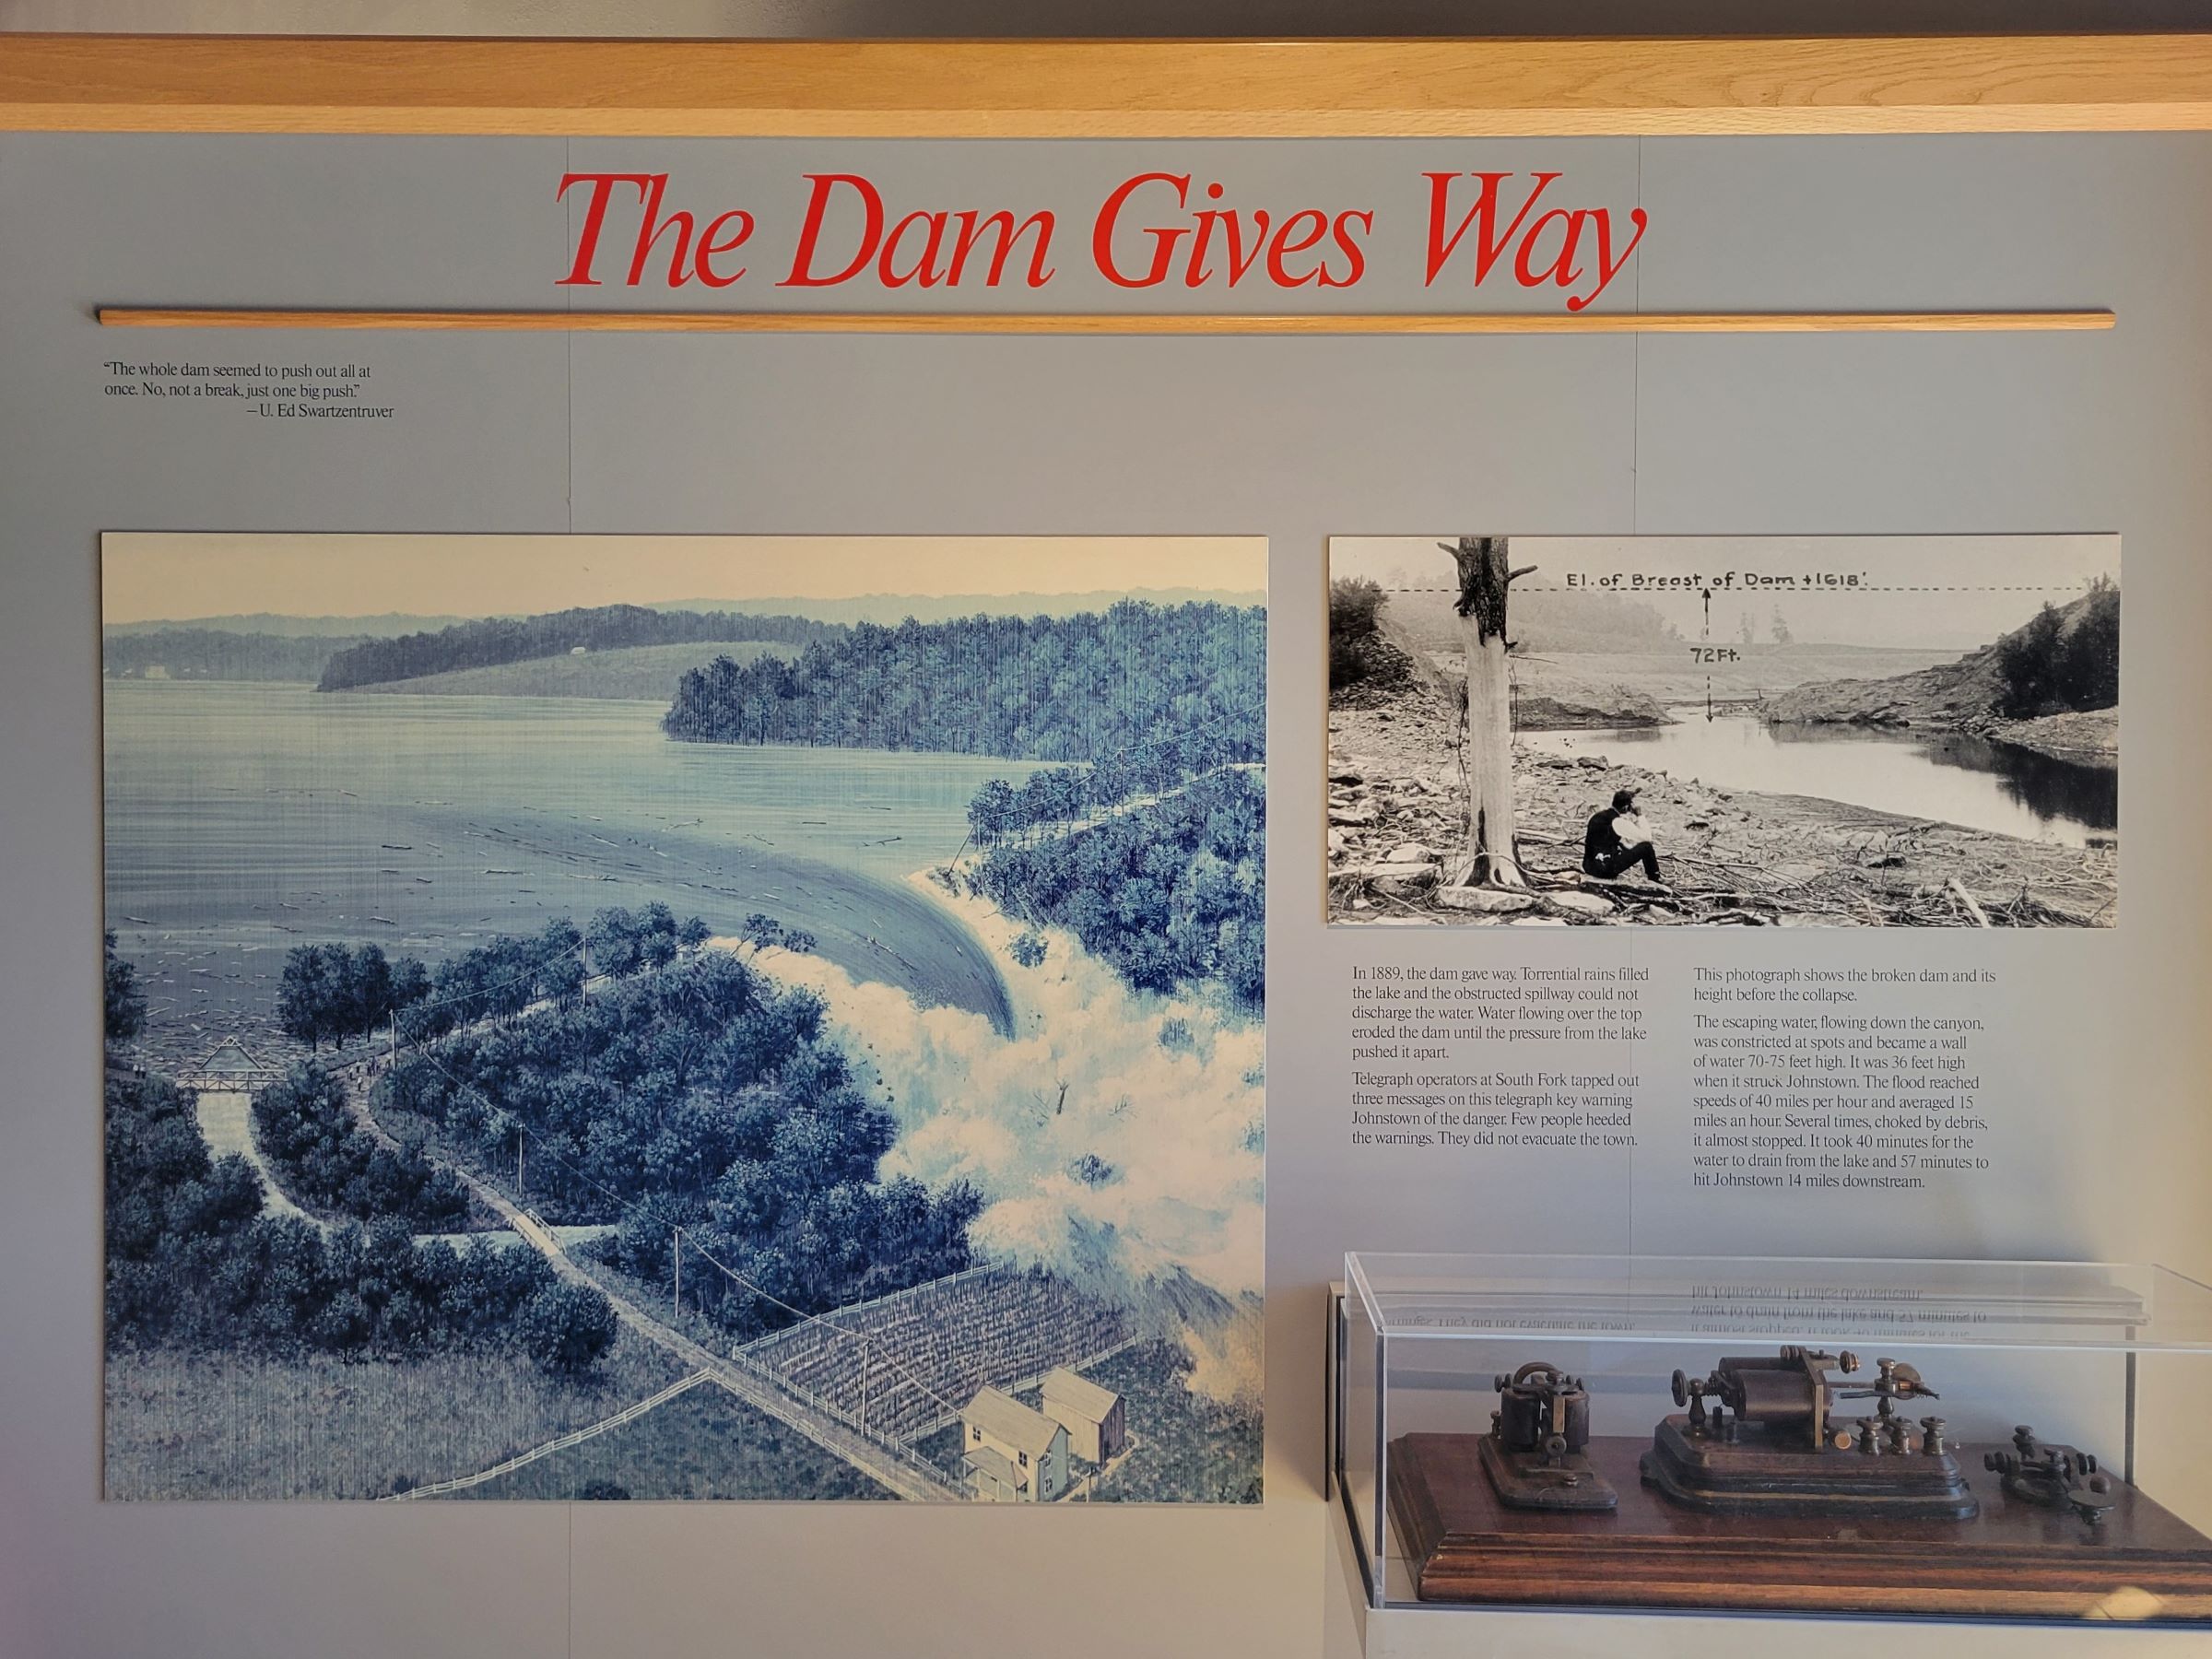 미국 최악의 댐 붕괴 사고를 기억하는 존스타운 홍수 국립기념지(Johnstown Flood National Memorial)